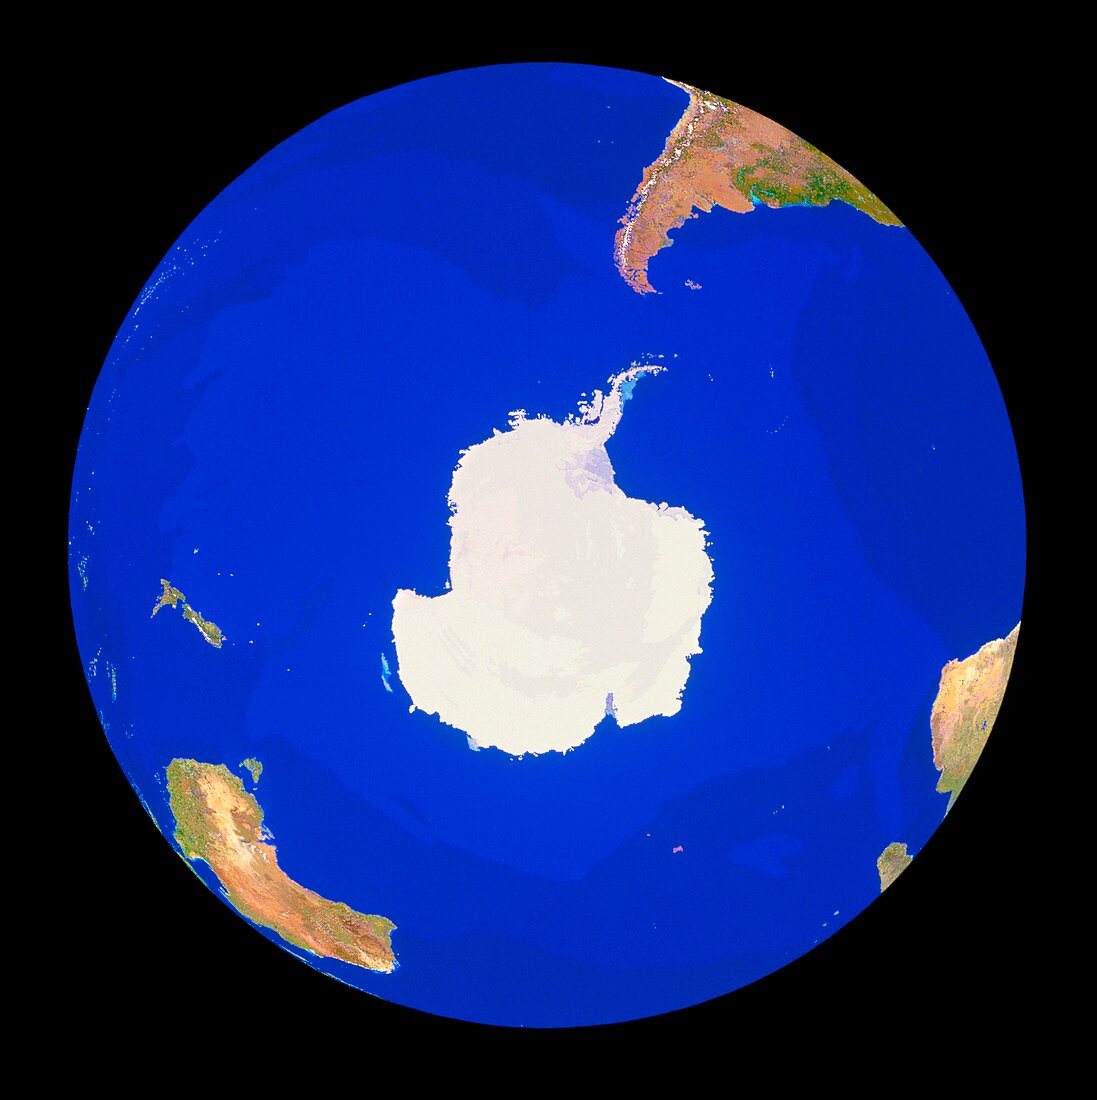 Geosphere image of Antarctica & southern ocean